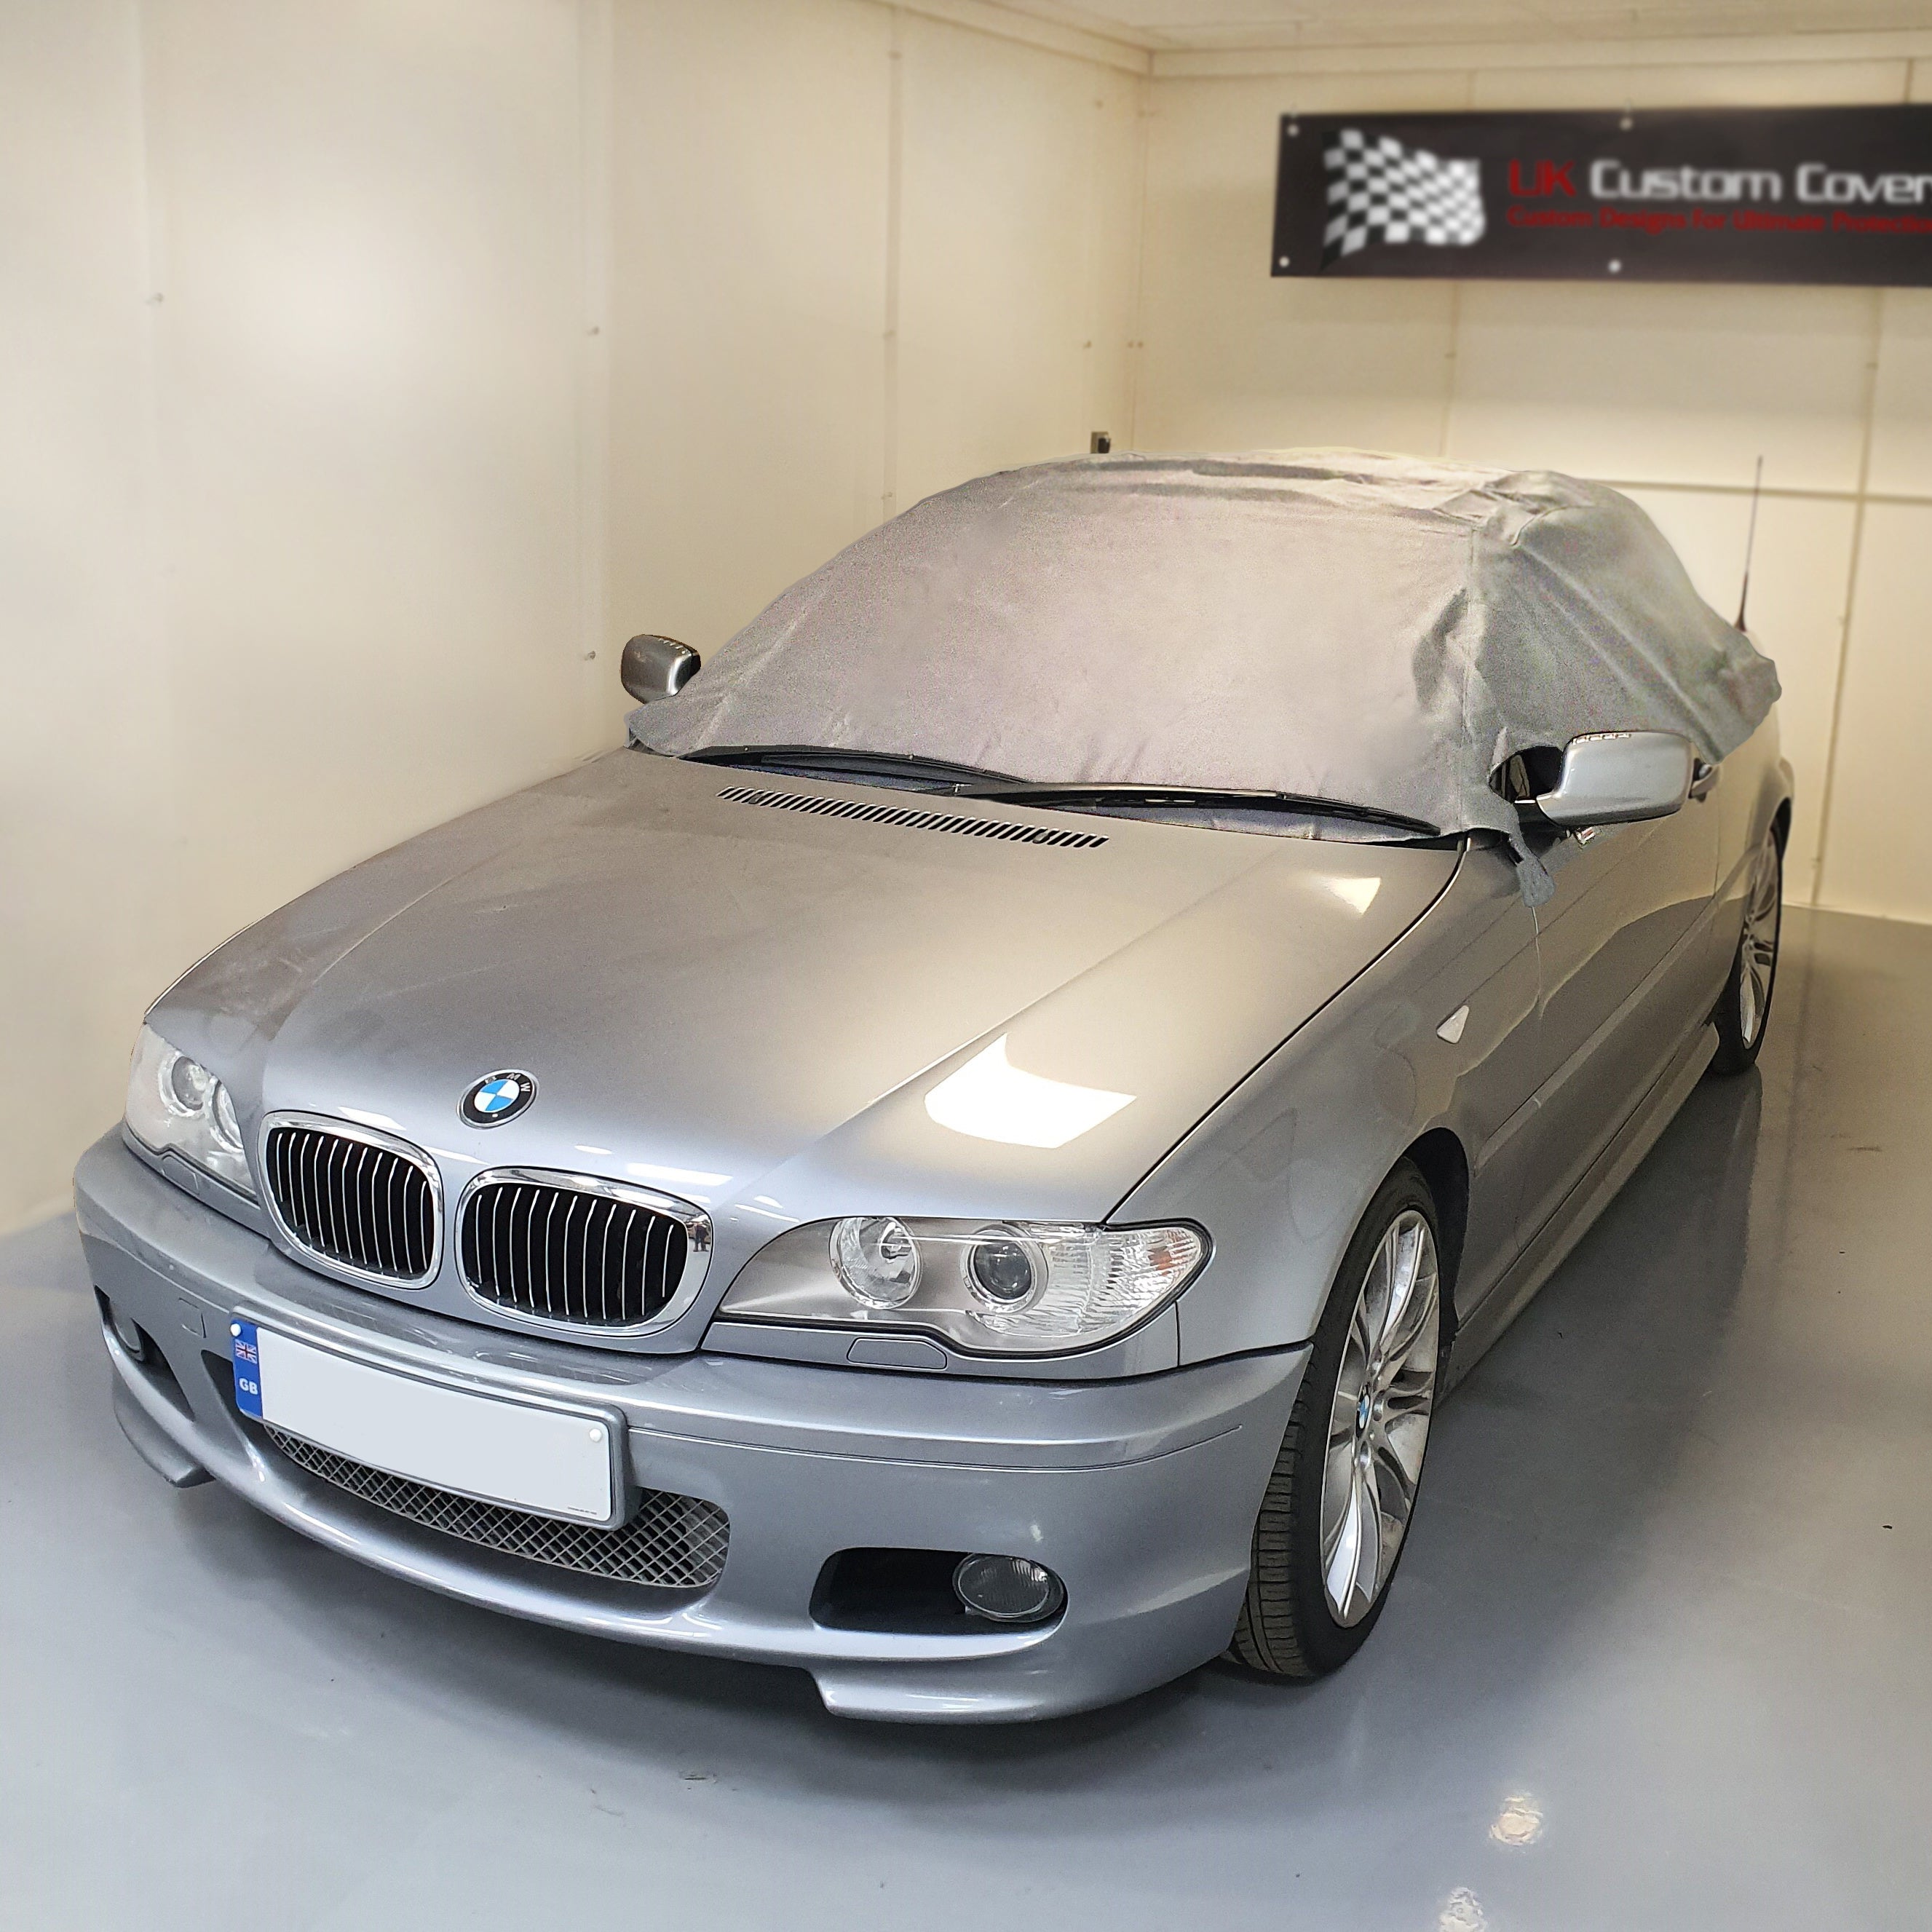 Demi-couverture de toit souple pour BMW E46 - 1999 à 2005 (571G) - GRIS